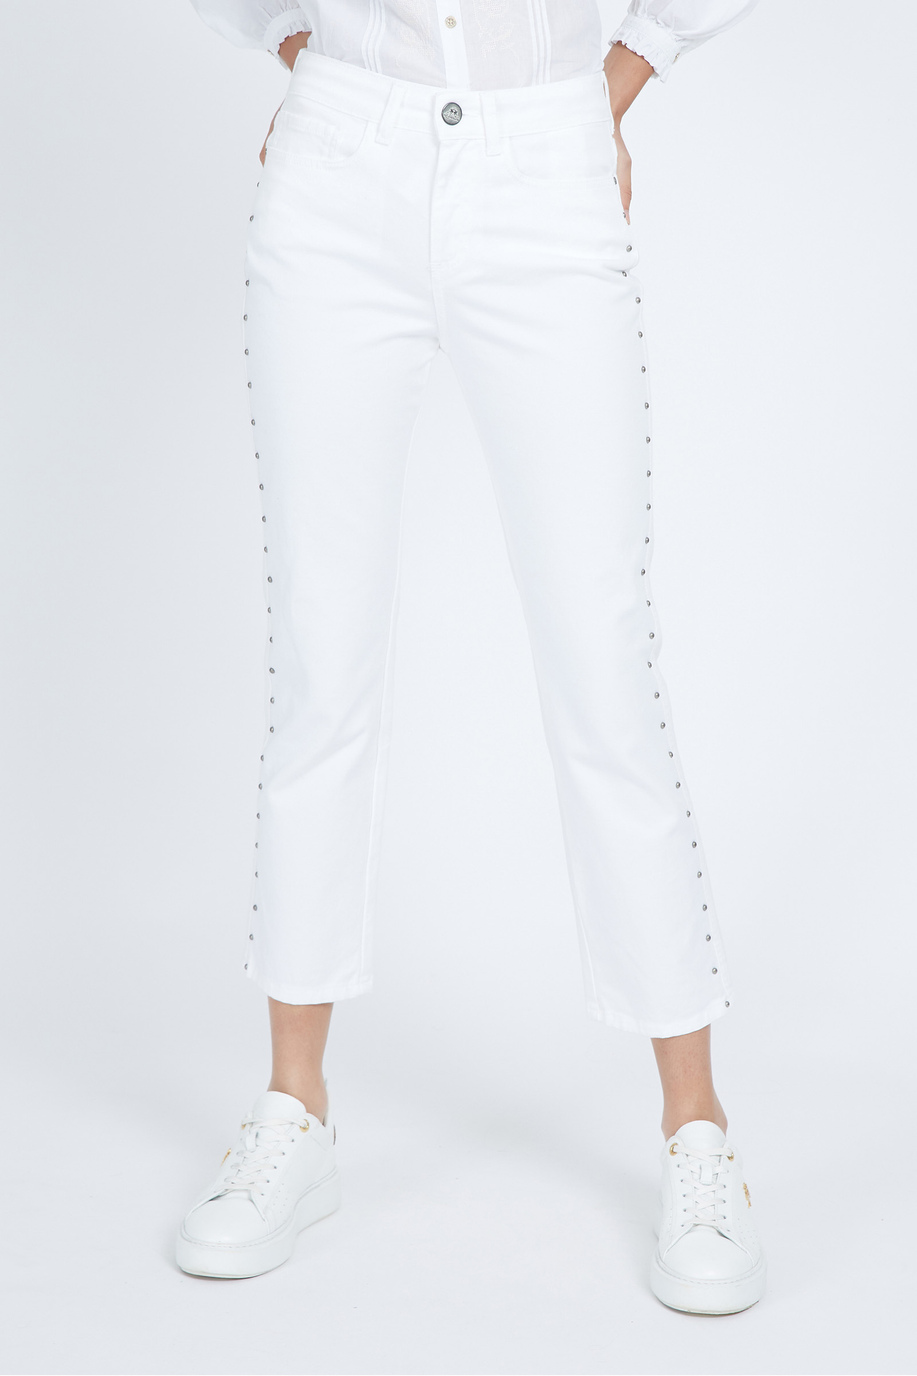 Pantalon femme regular fit 5 poches en coton stretch - Vangie - Pantalons | La Martina - Official Online Shop